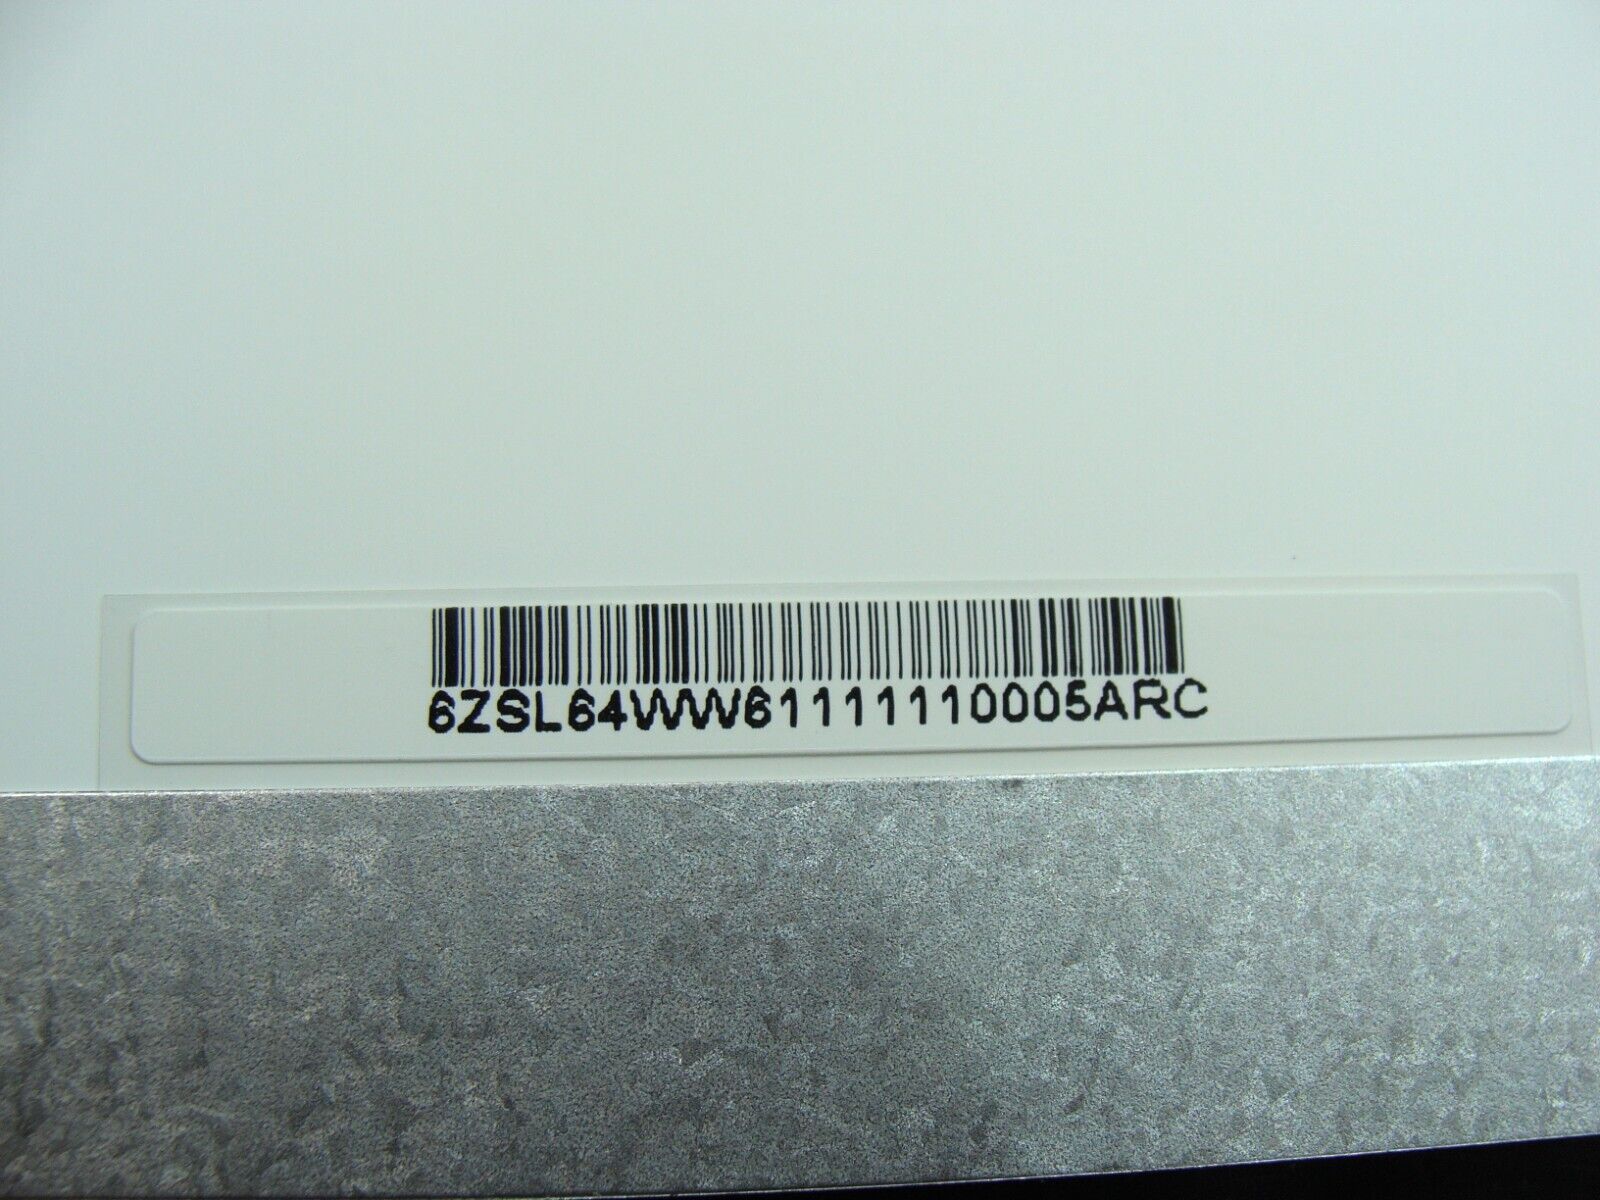 Acer Aspire E5-575G 15.6